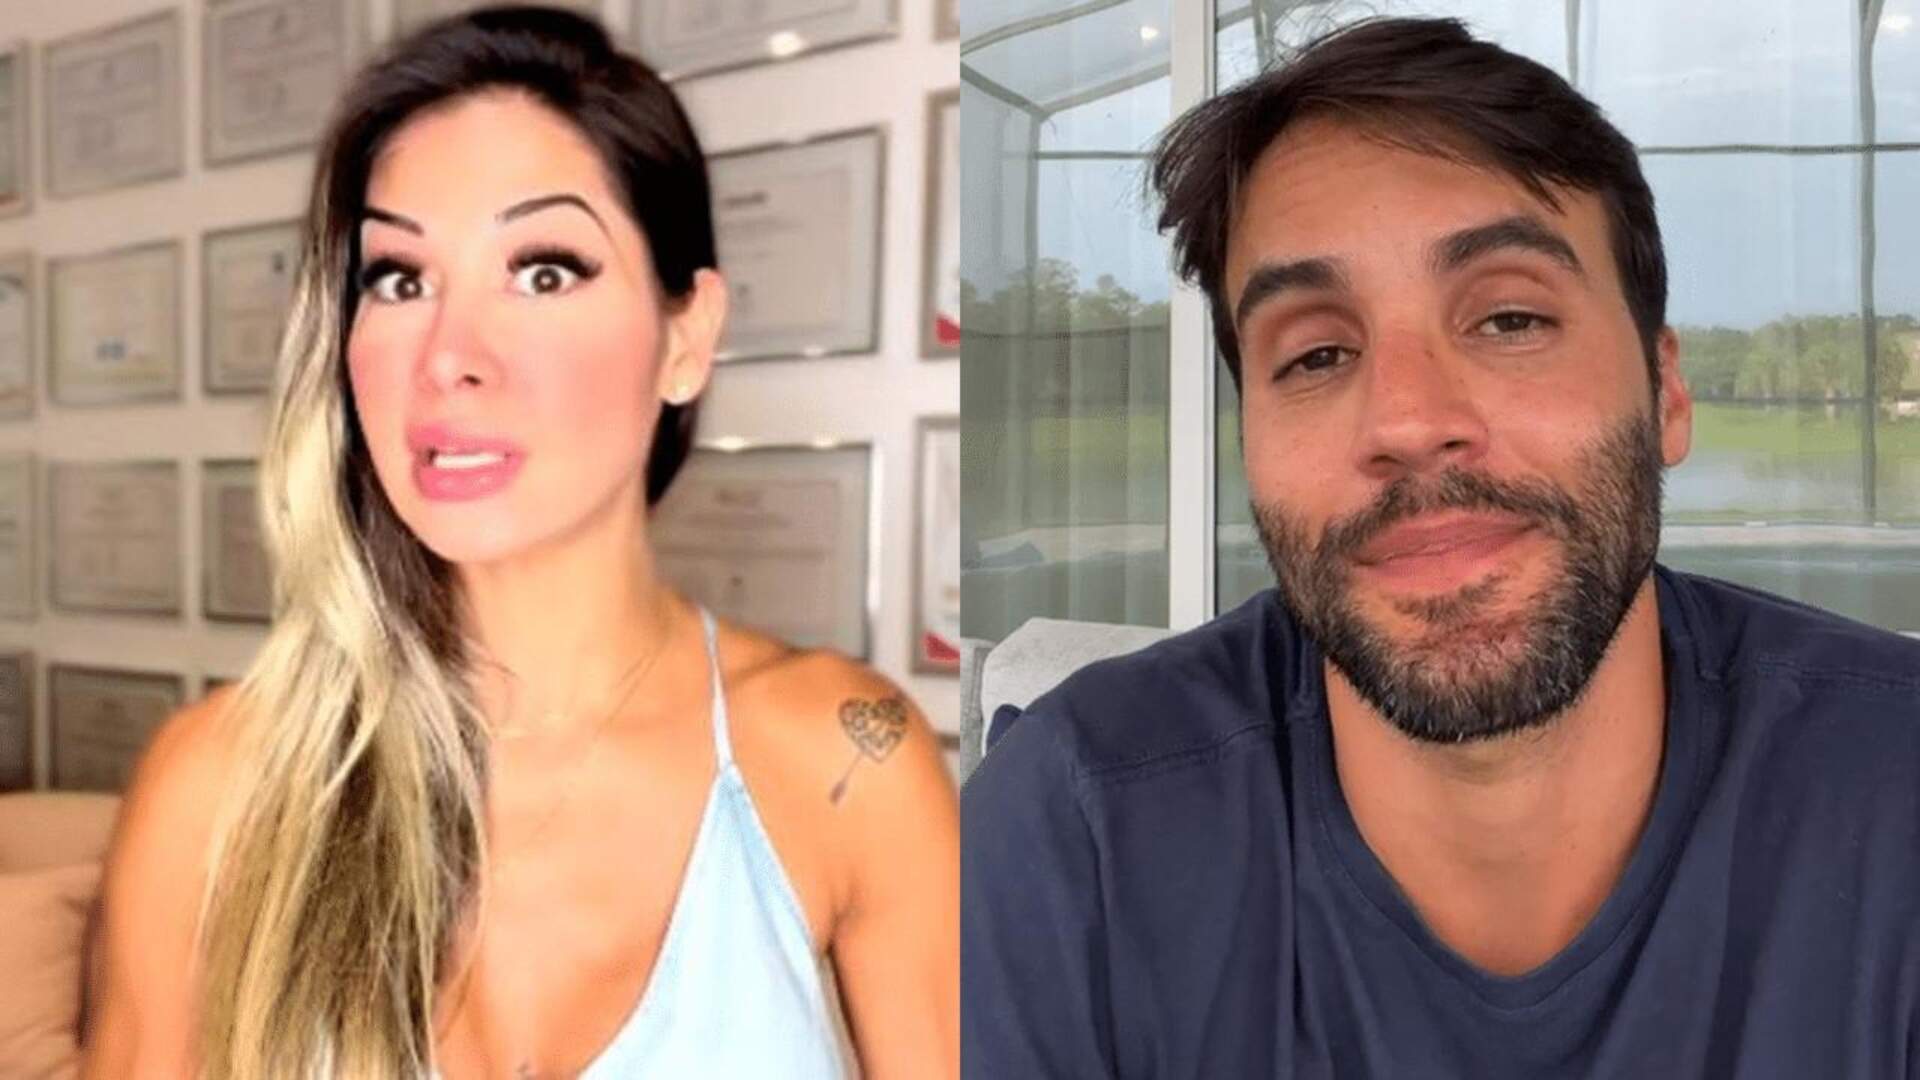 Bate boca: Após vídeo polêmico, Maíra Cardi perde a linha e dá invertida em marido de Ivete Sangalo - Metropolitana FM